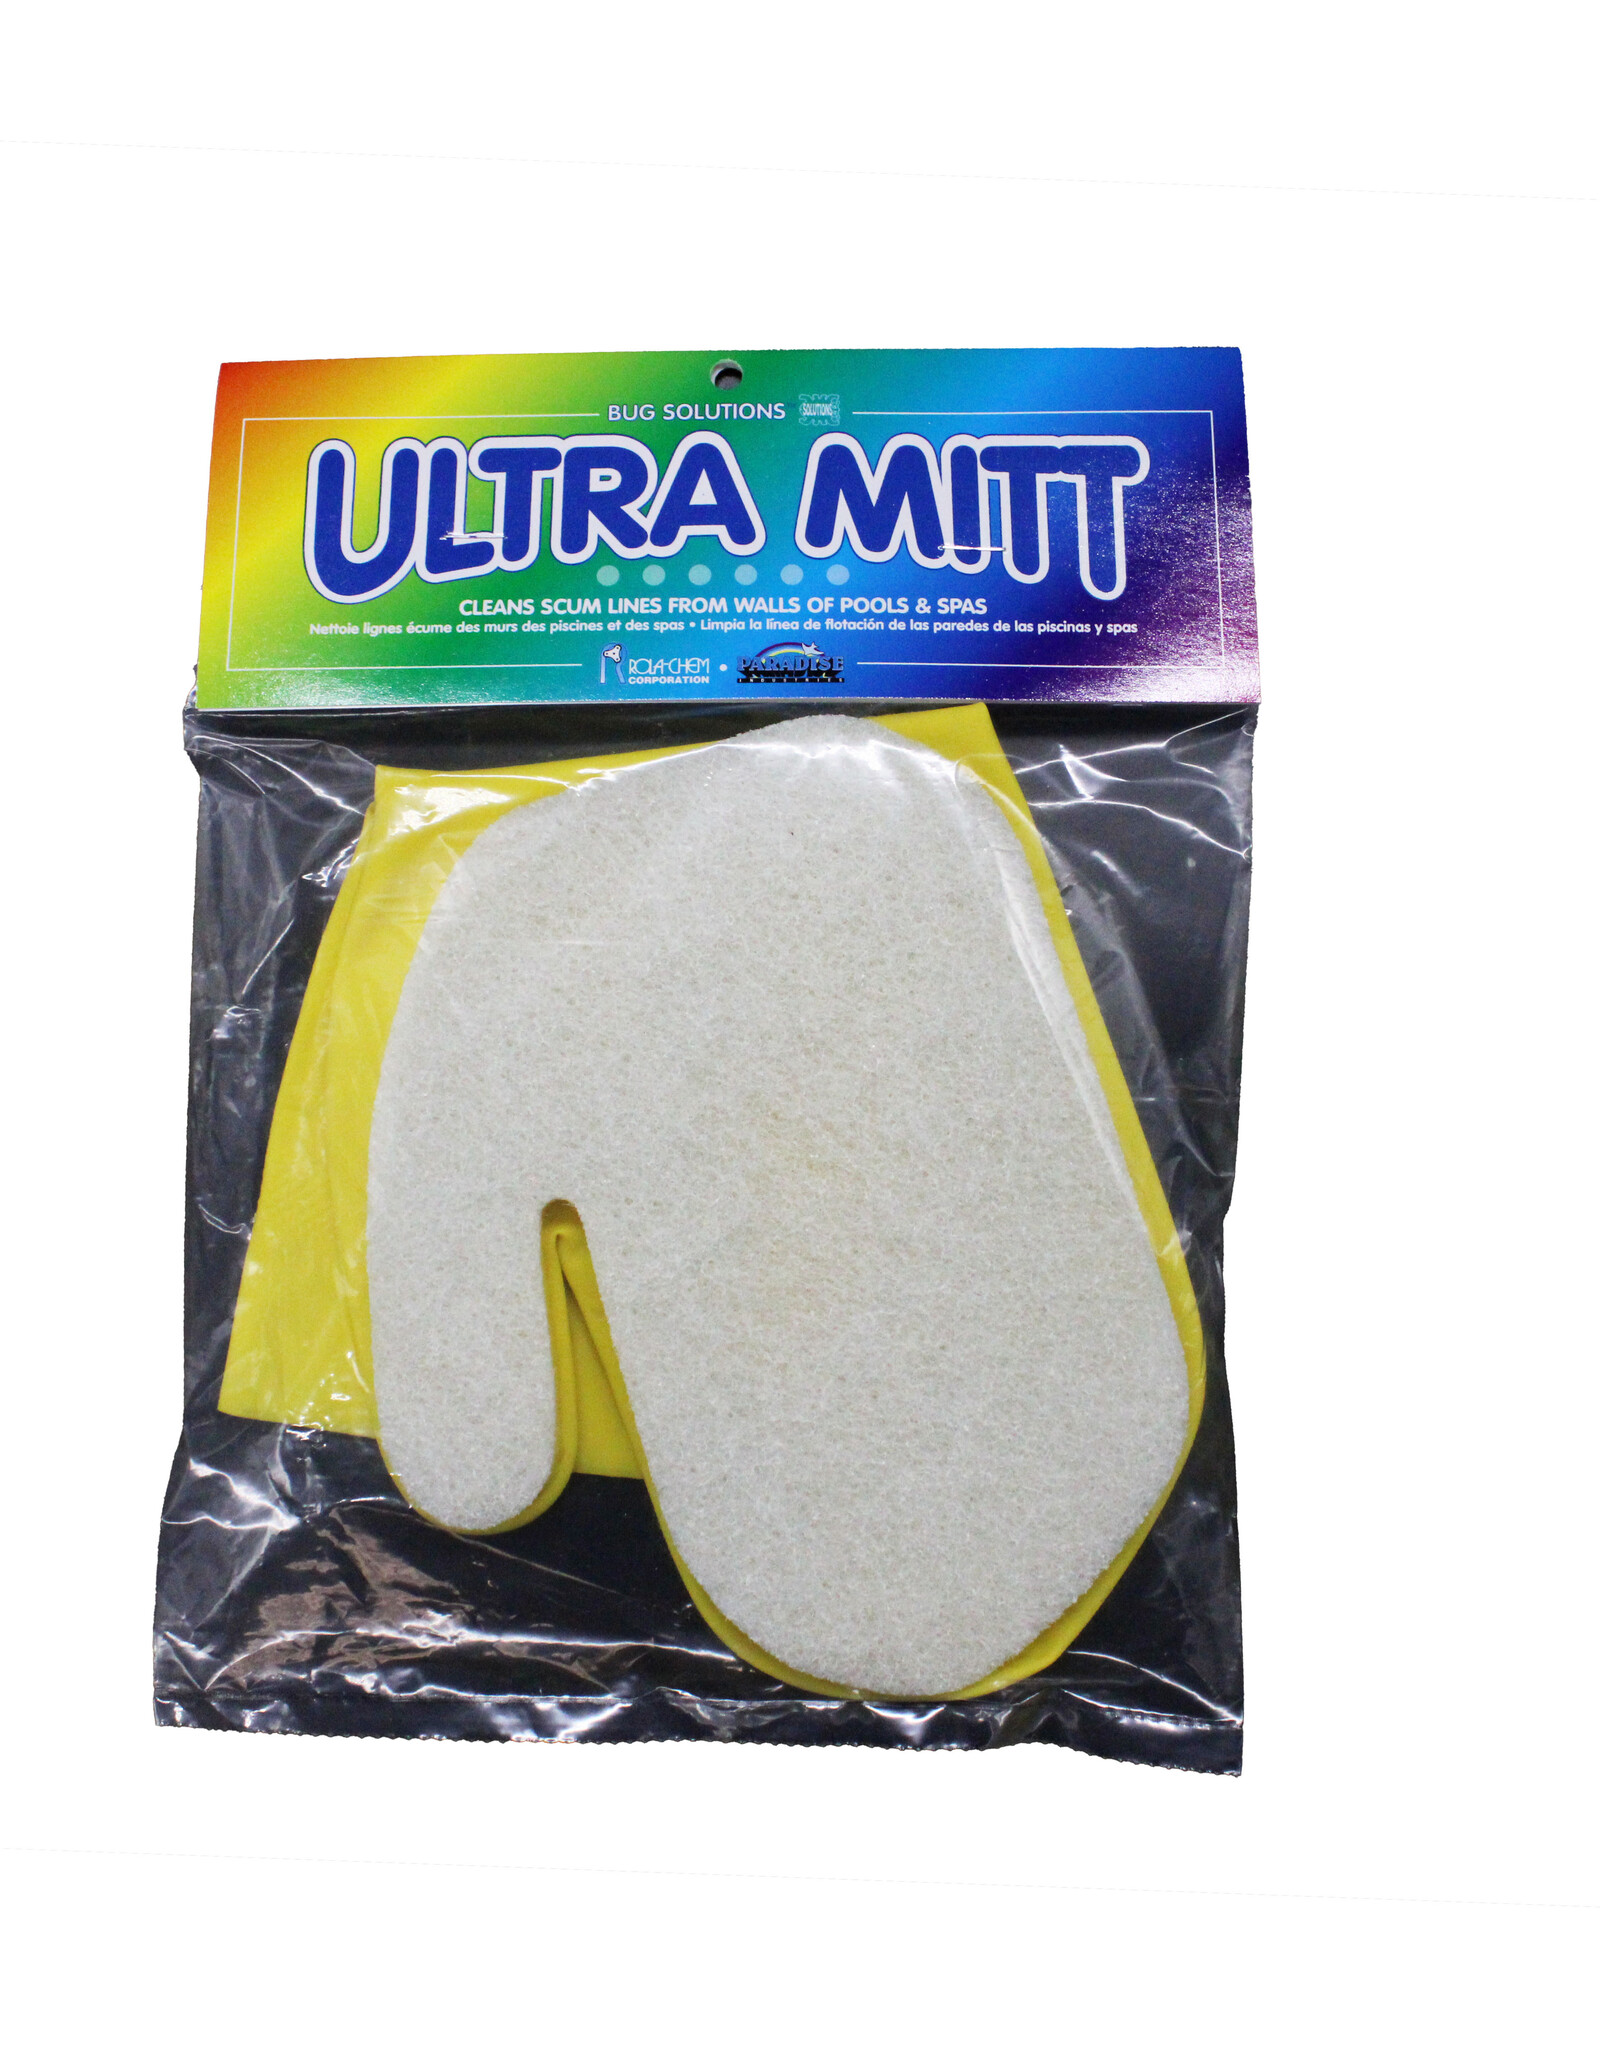 Ultra Mitt